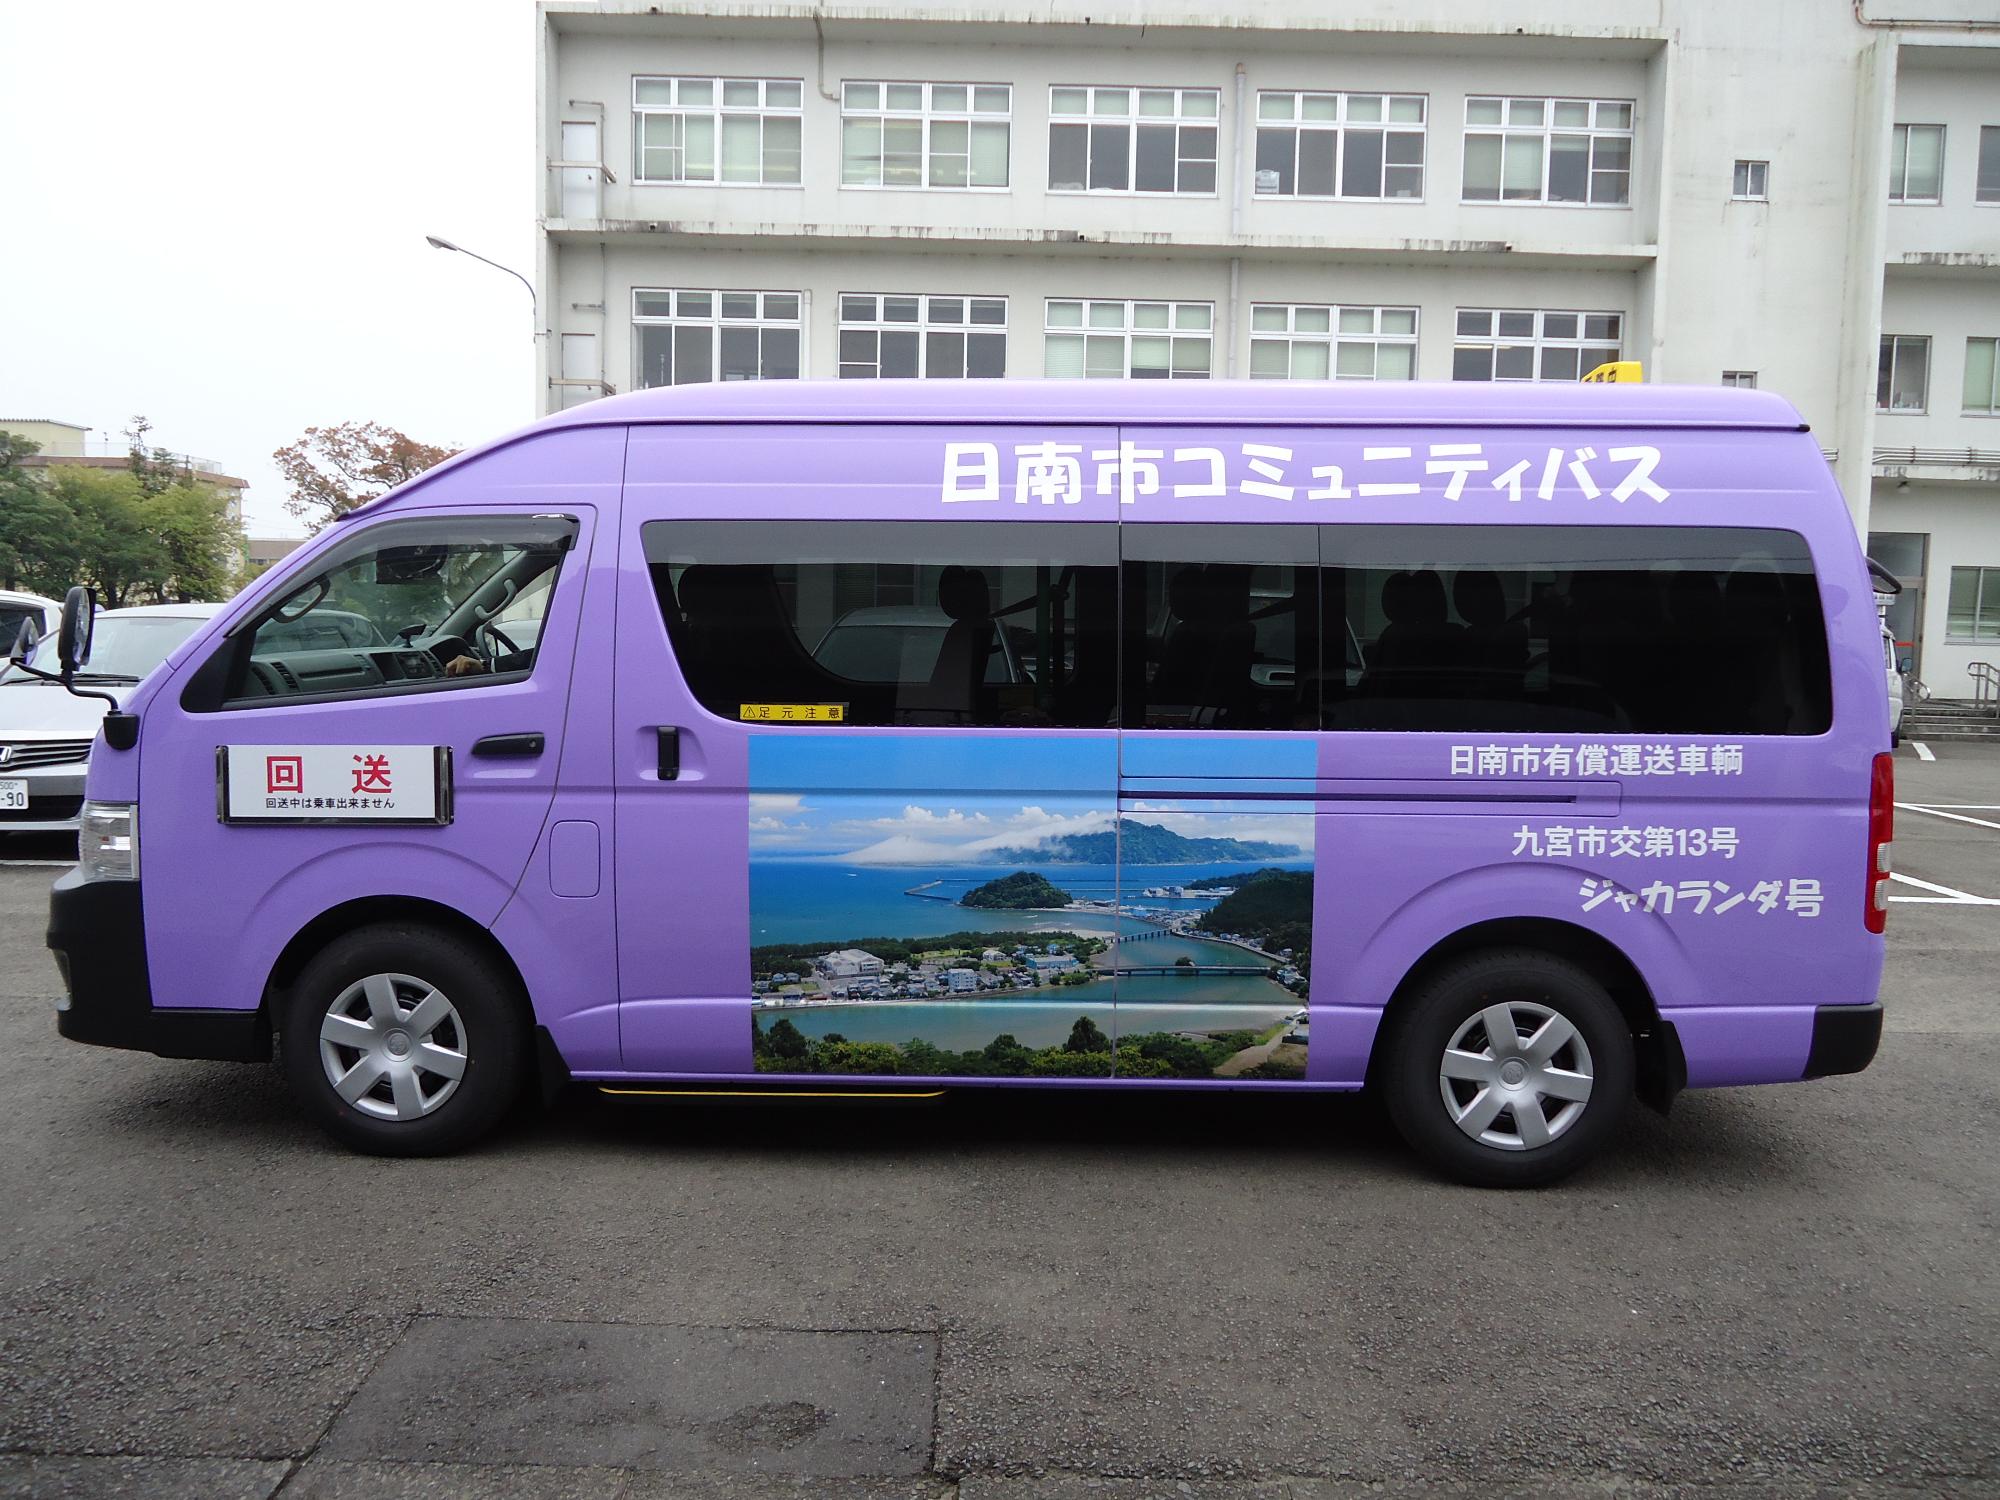 紫色の日南市コミュニティバス清流号の車体全体を横から写した写真